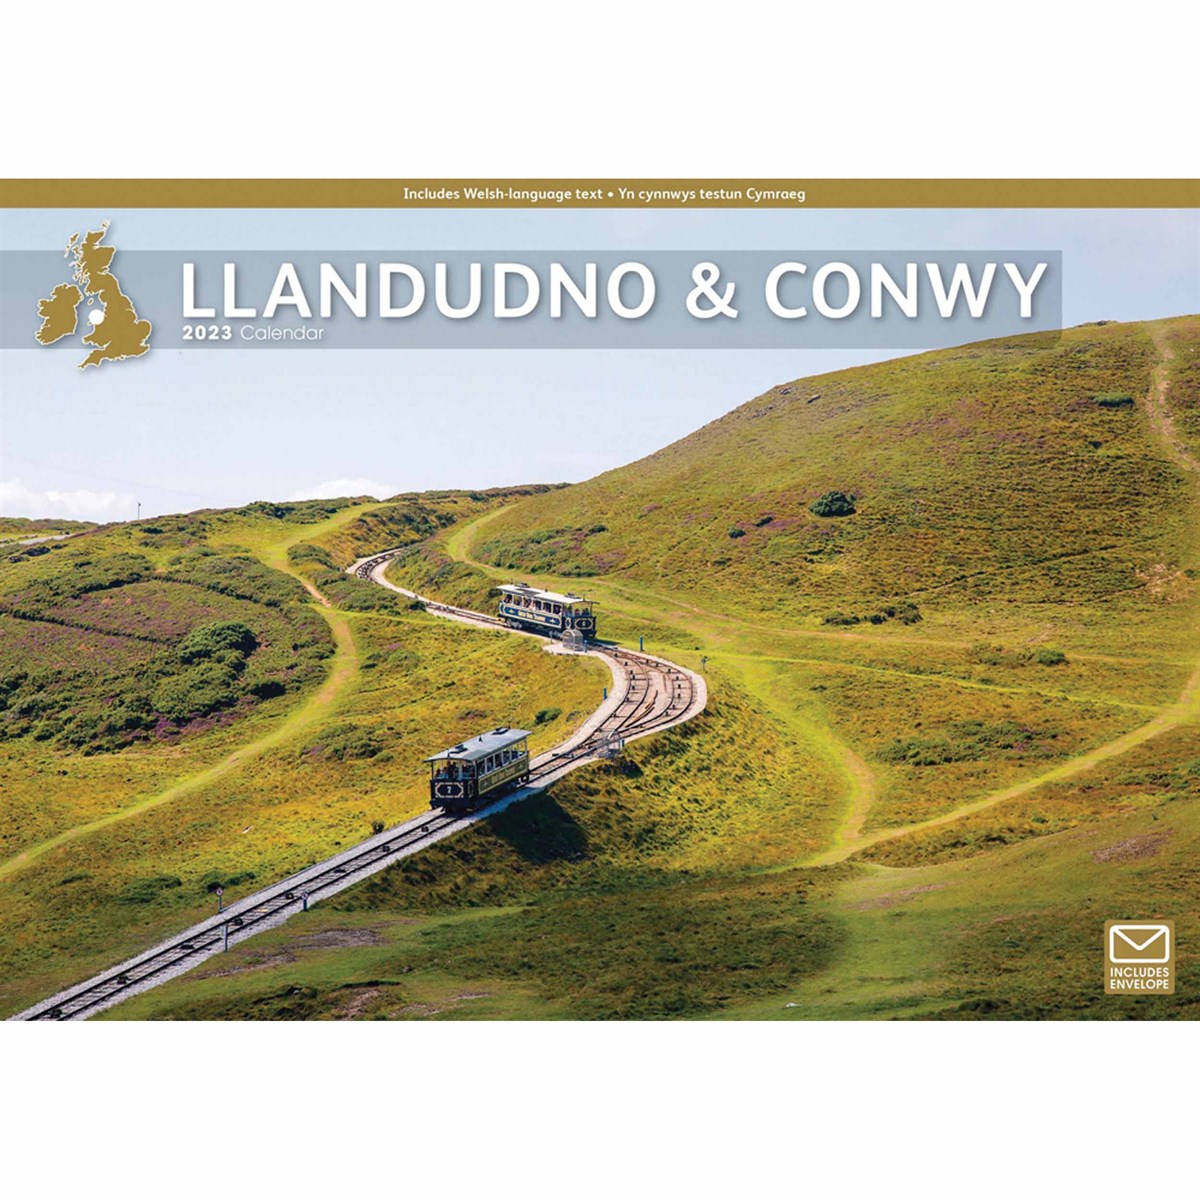 Llandudno & Conwy A4 2023 Calendars